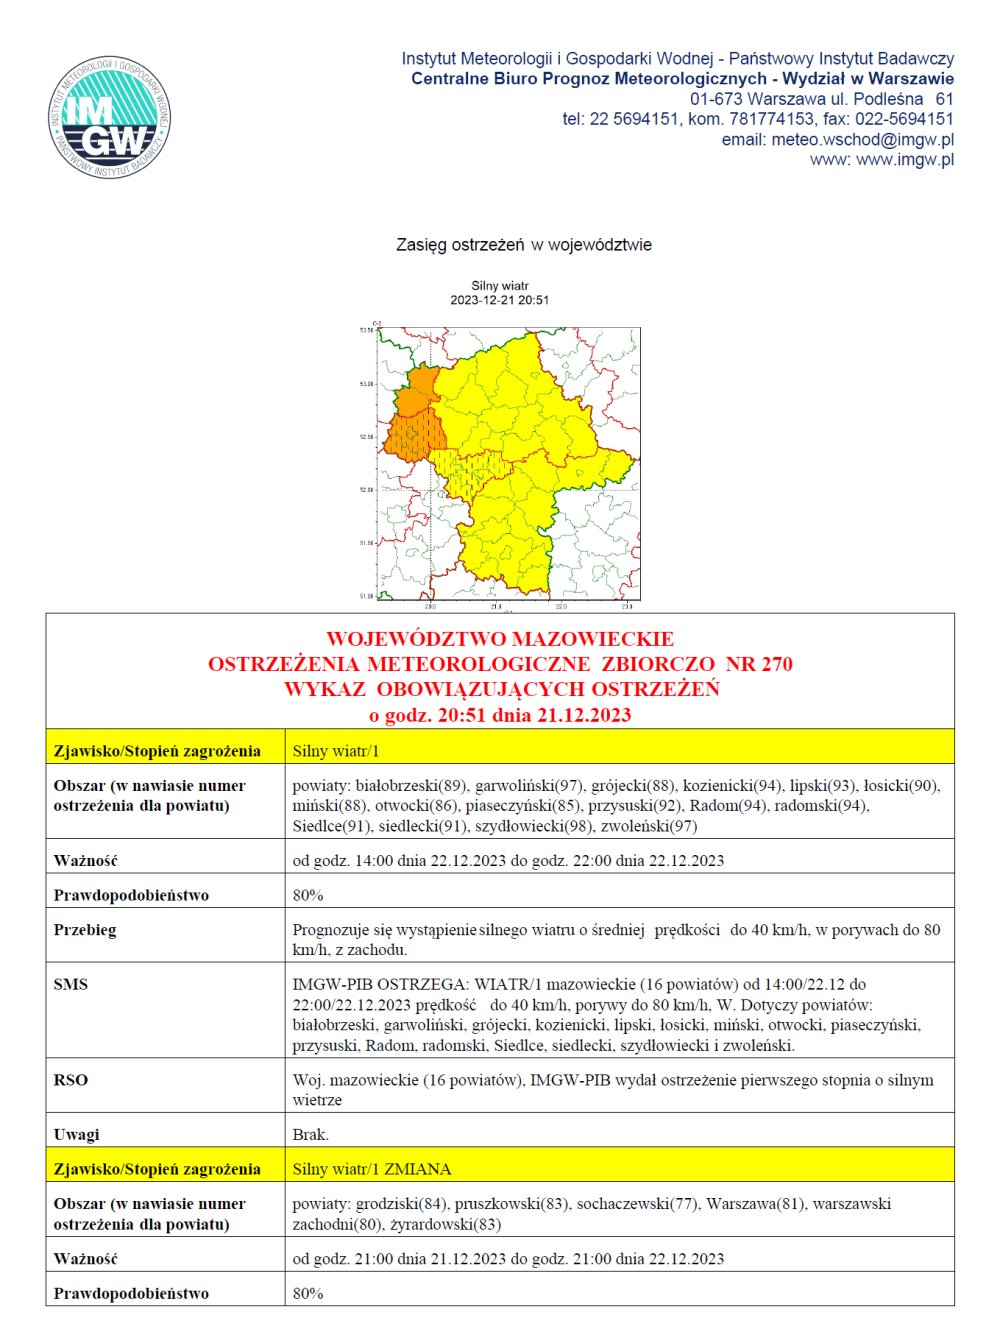 Ostrzeżenie meteorologiczne IMGW-PIB dla terenu powiatu radomskiego